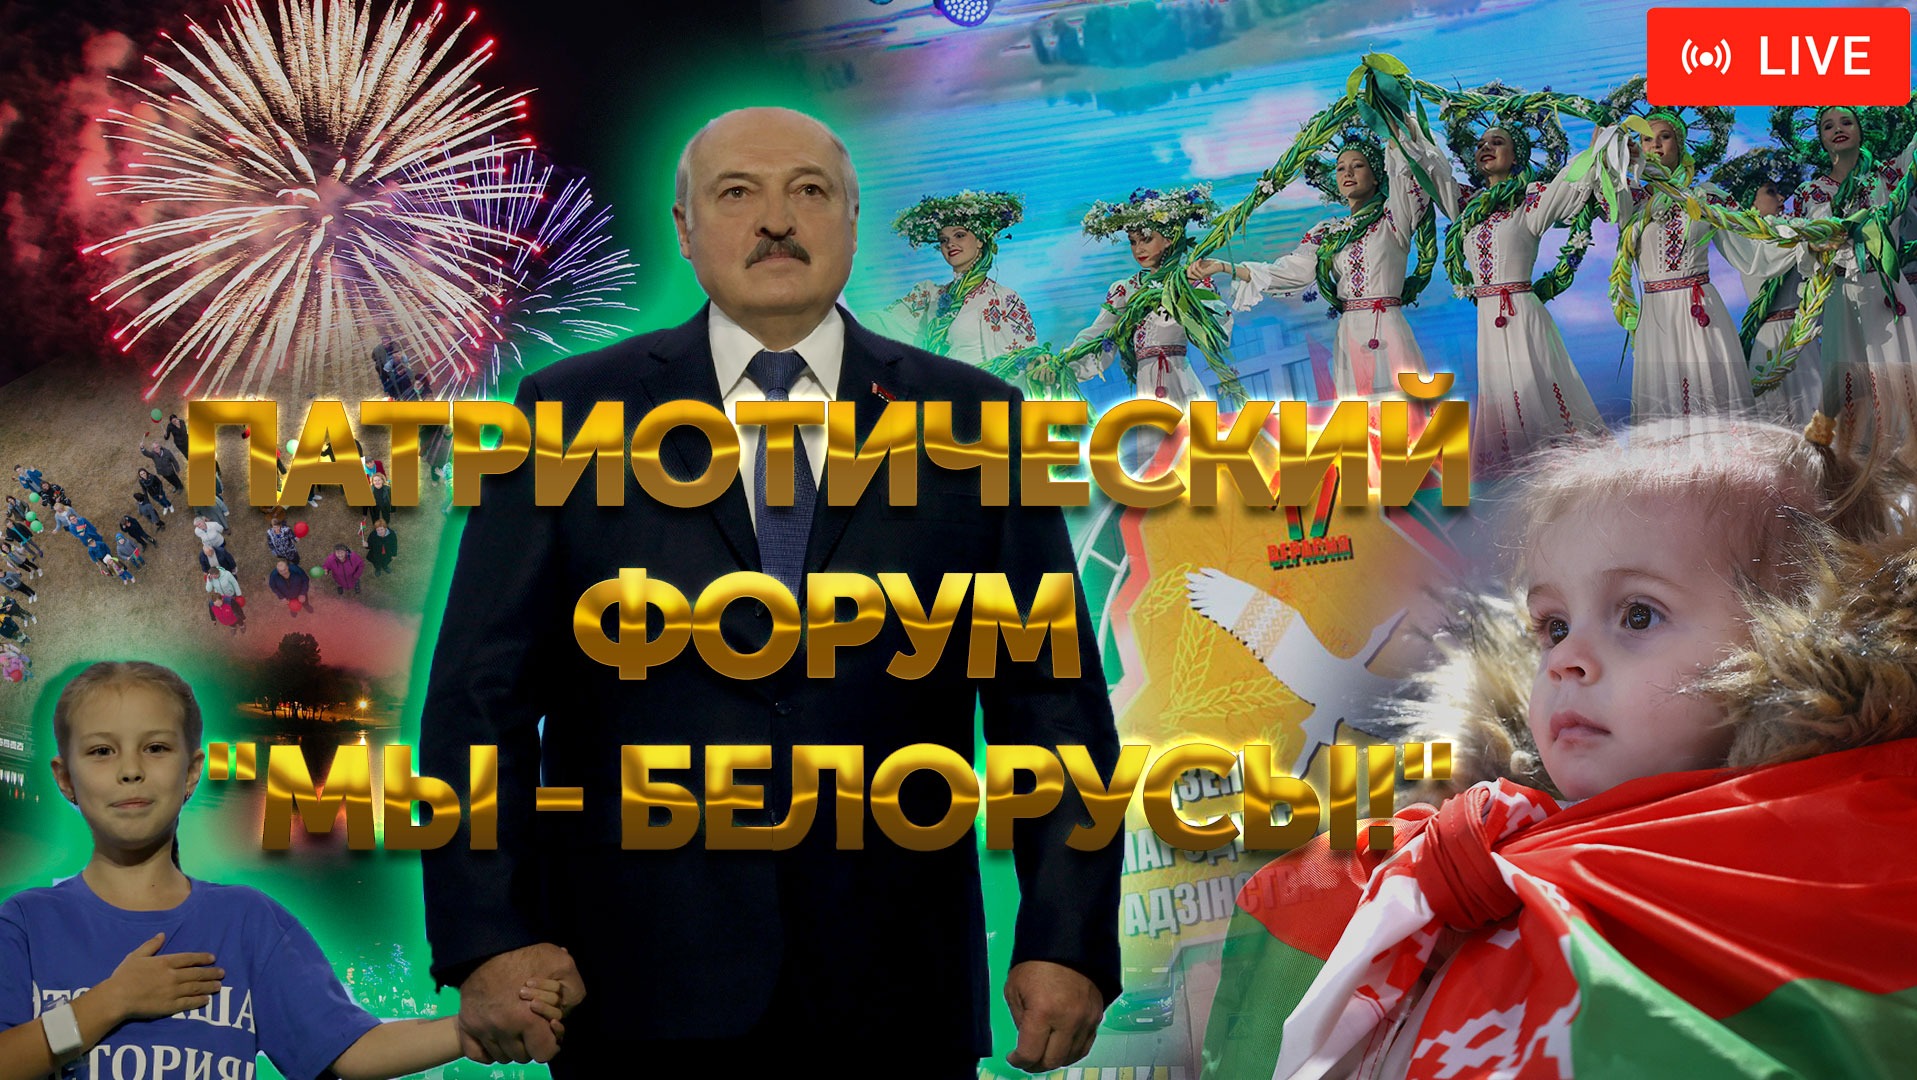 Патриотический форум, посвященный Дню народного единства "Мы - белорусы!" | ПРЯМАЯ ТРАНСЛЯЦИЯ